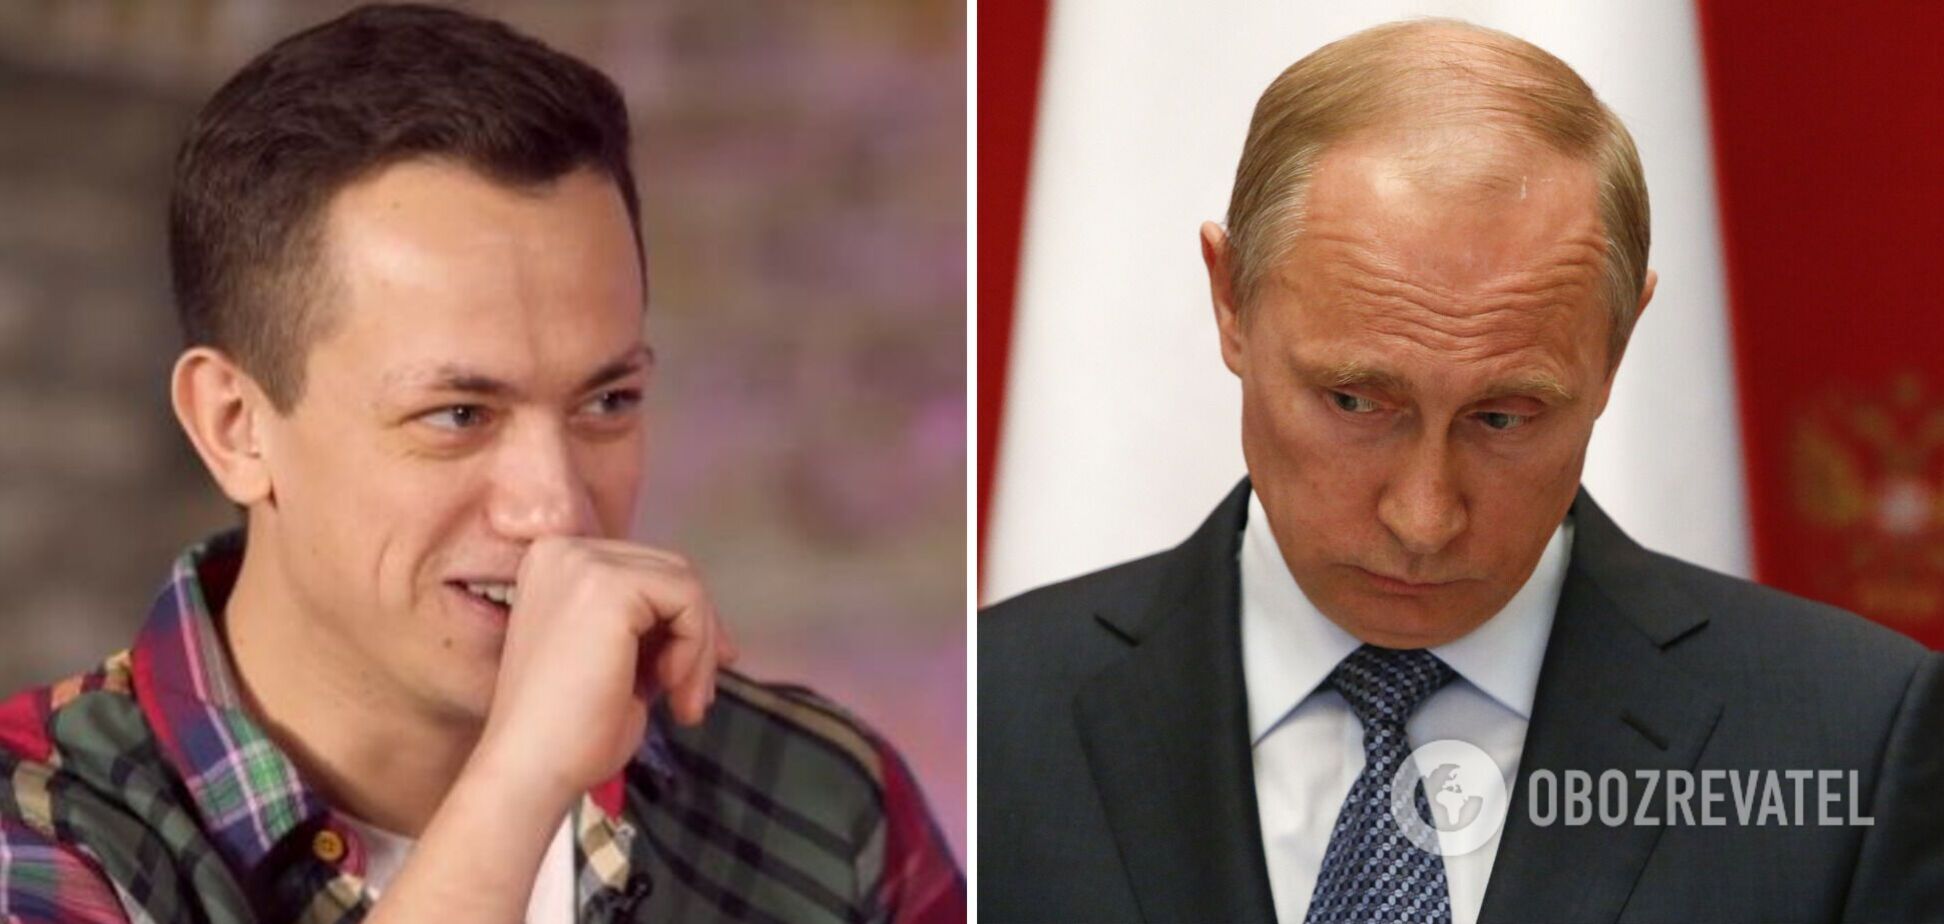 Дурнев жестко ответил на вопрос, что он бы сделал с Путиным: Гордон не скрывал восхищения